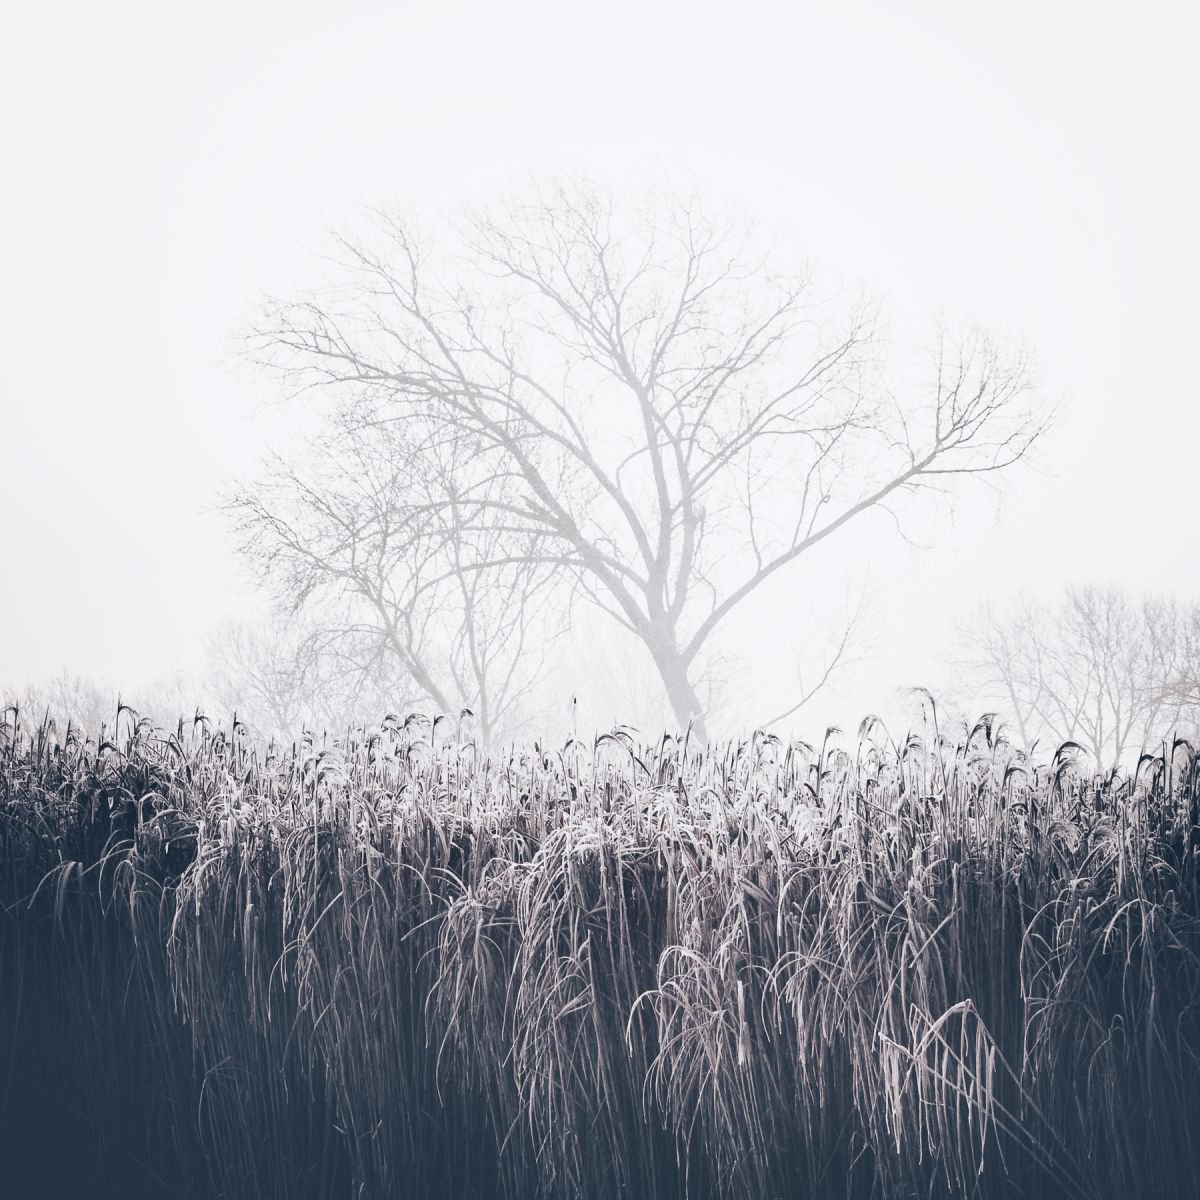 Winter’s Dust by Daniel Cook